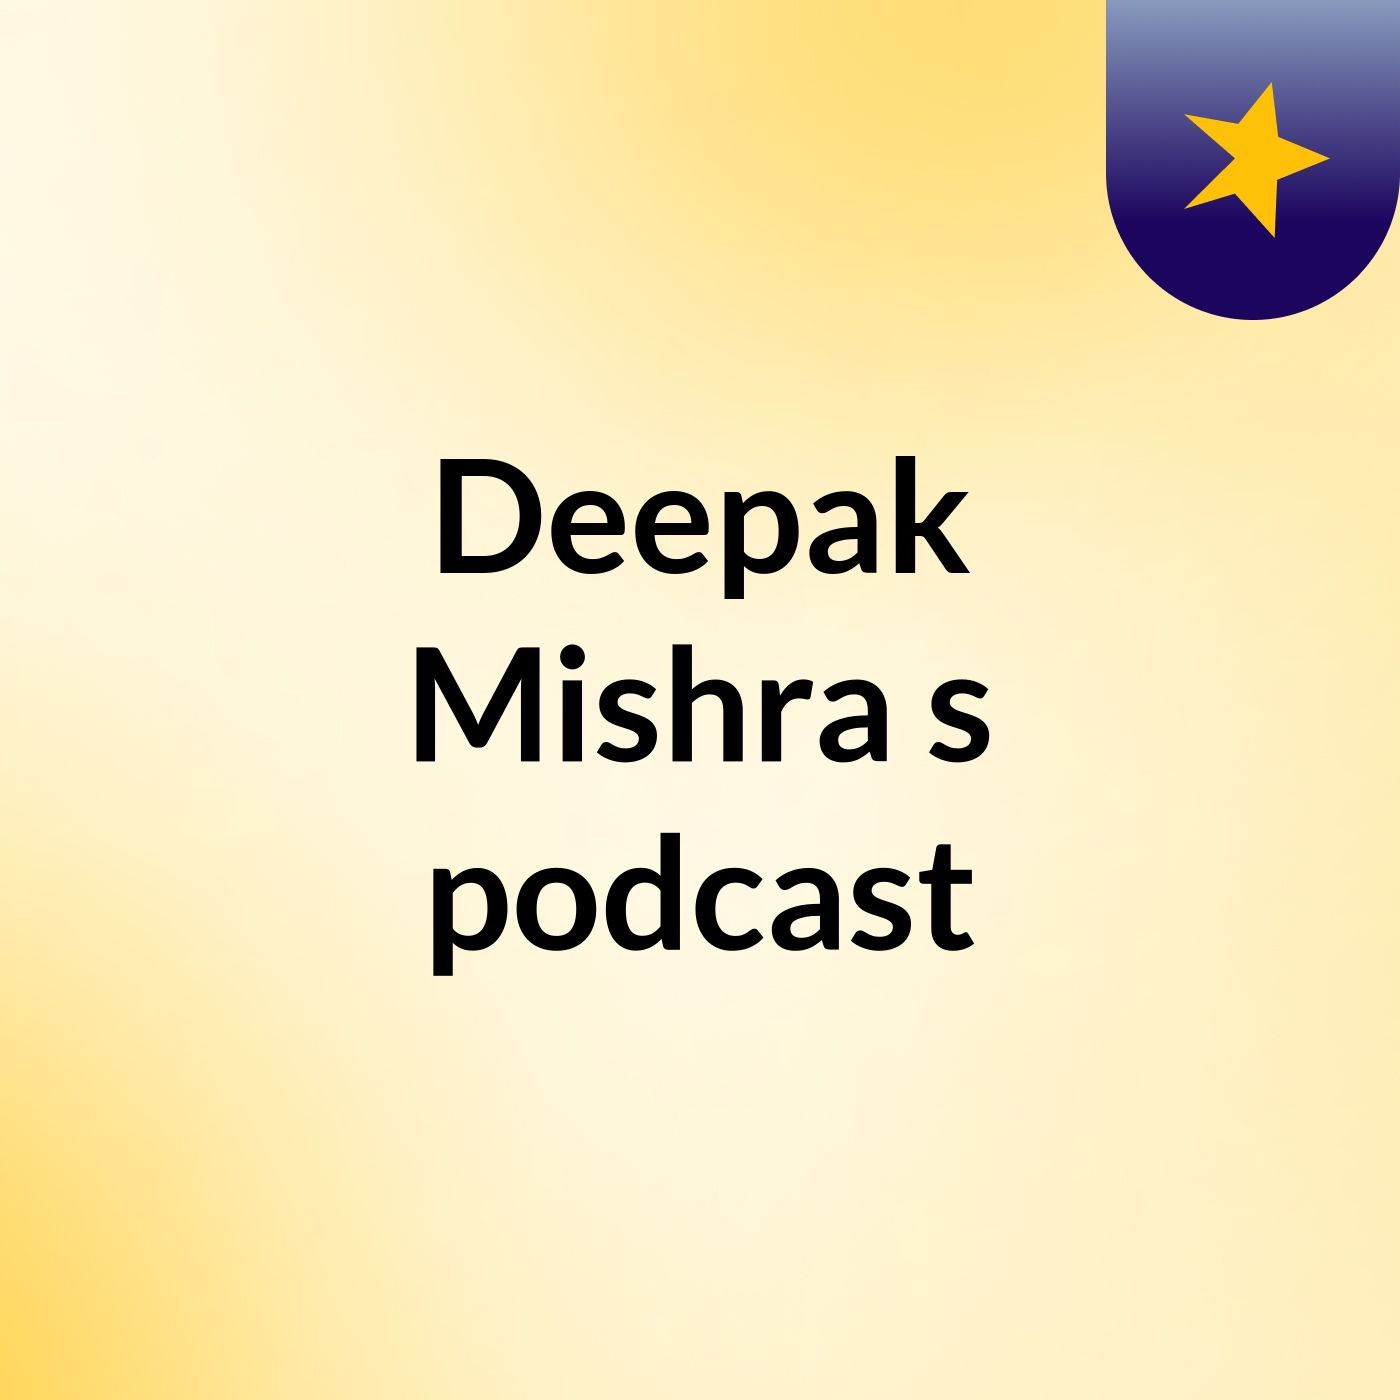 Episode 6 - Deepak Mishra's podcast